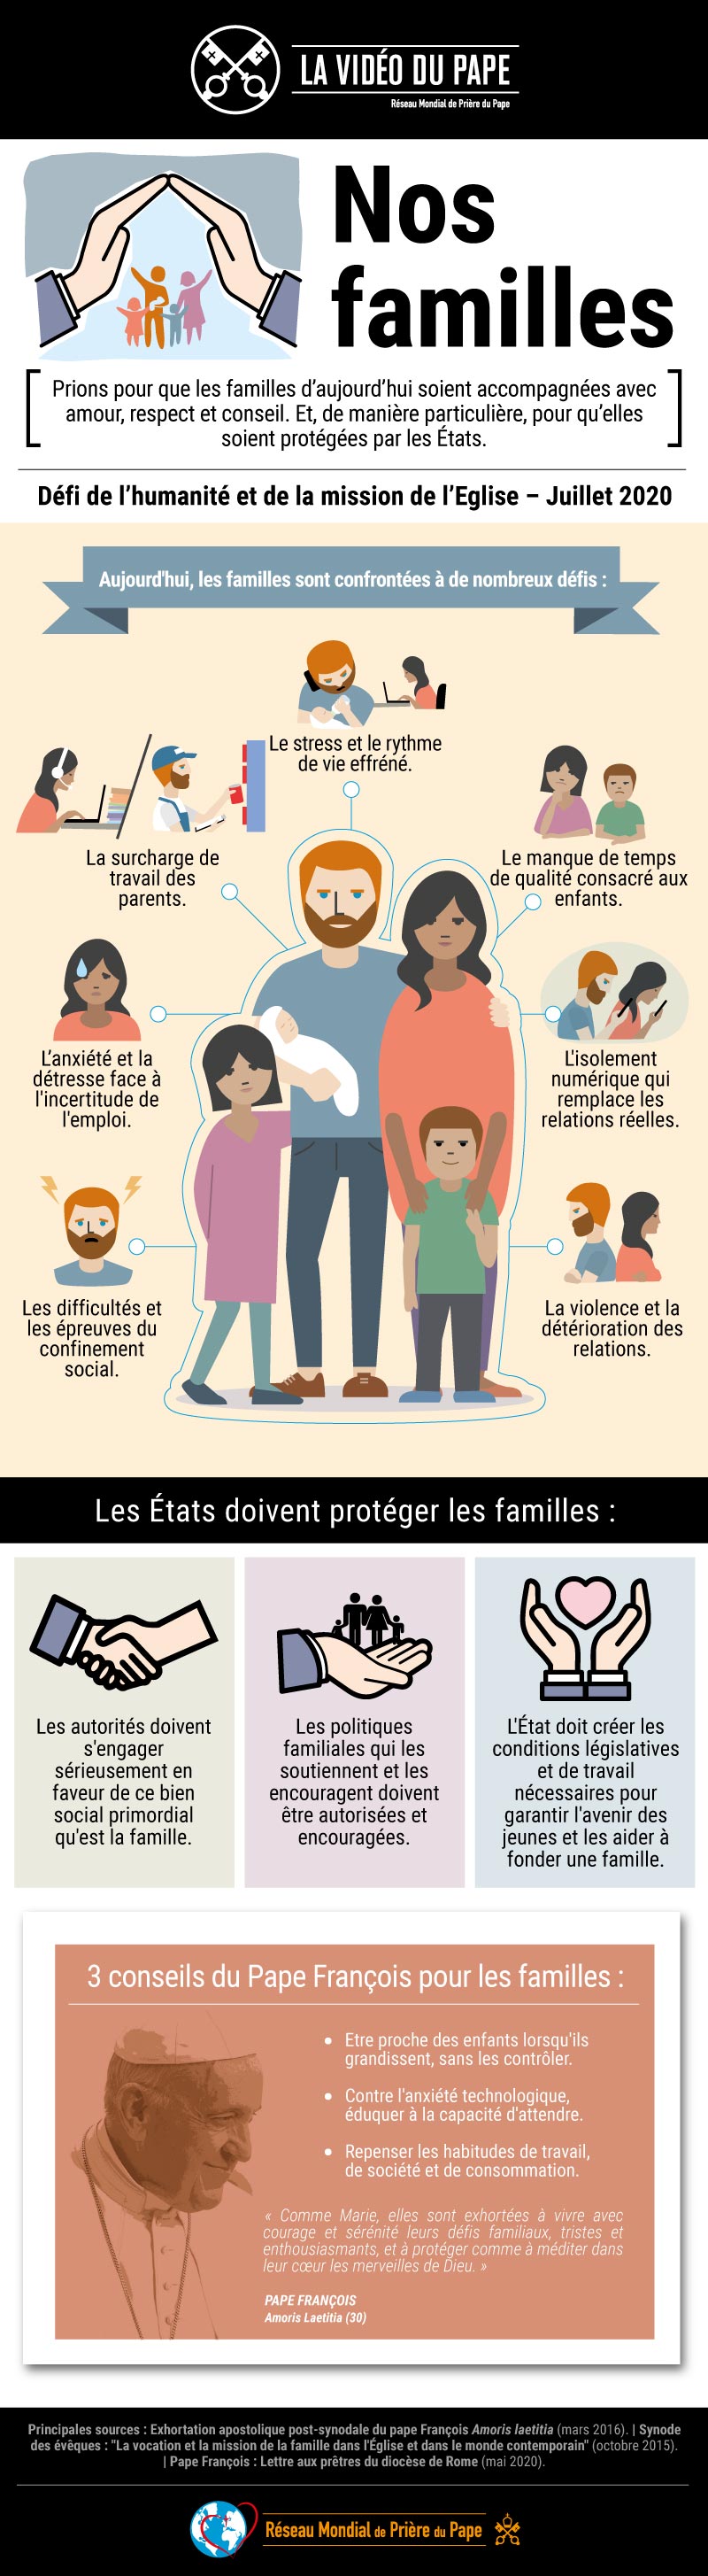 Infographie-TPV-7-2020-FR-La-Vidéo-du-Pape-TPV-7-2020-FR-La-Vidéo-du-Pape-Nos-familles.jpg